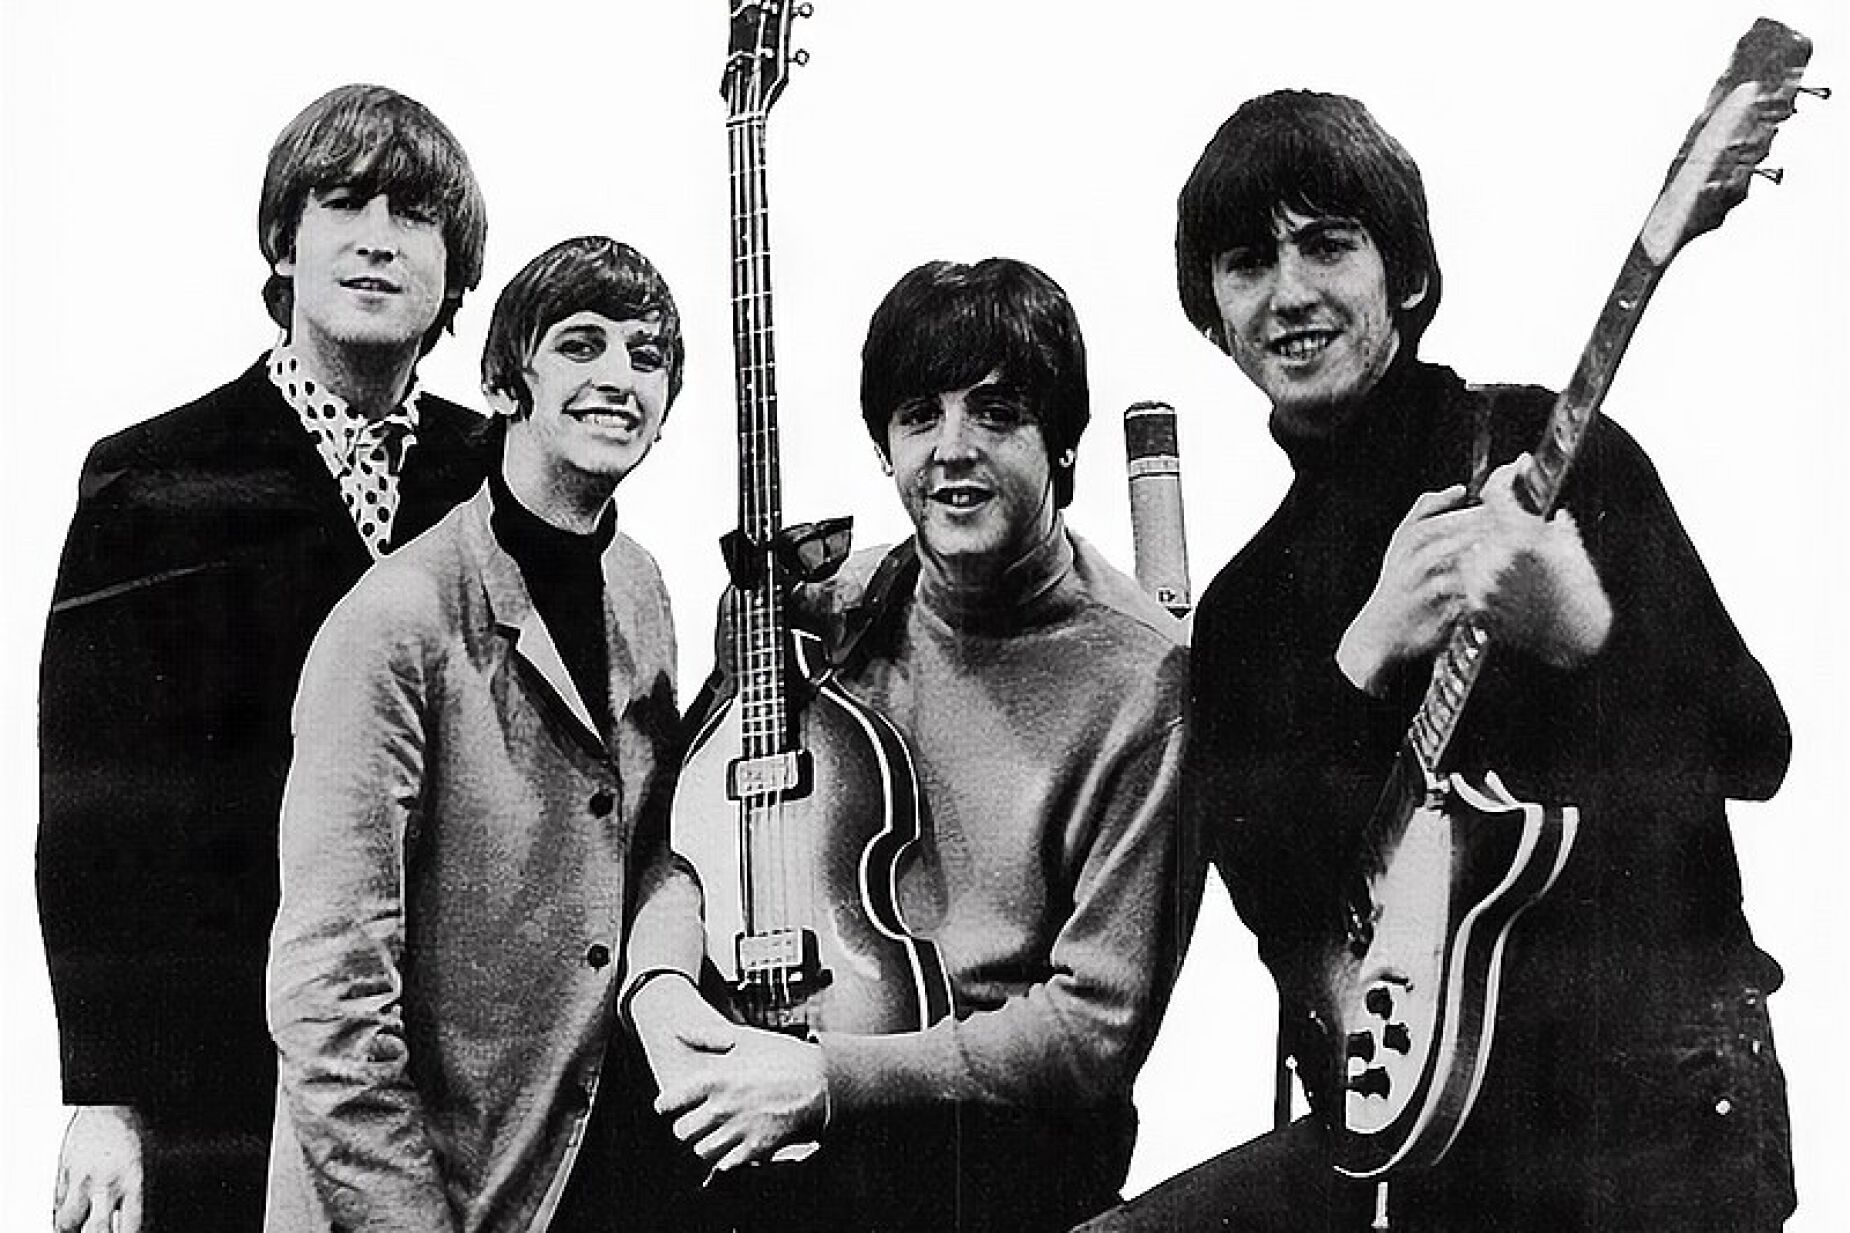 Beatles voltam aos tops britânicos 54 anos depois